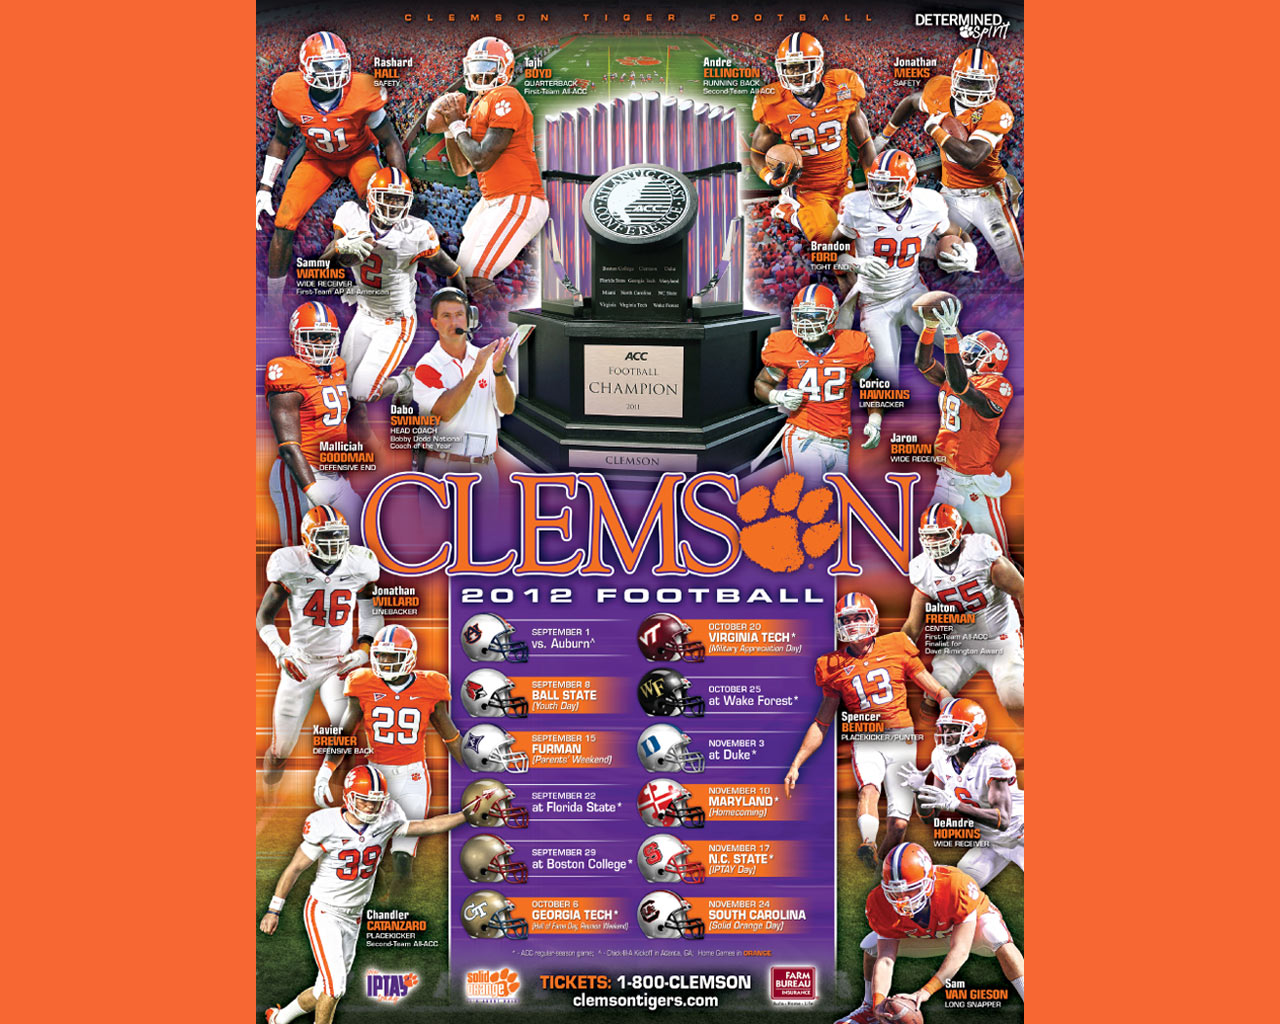 27 2012 Clemson 2012 Football Schedule Clemson Tigers football